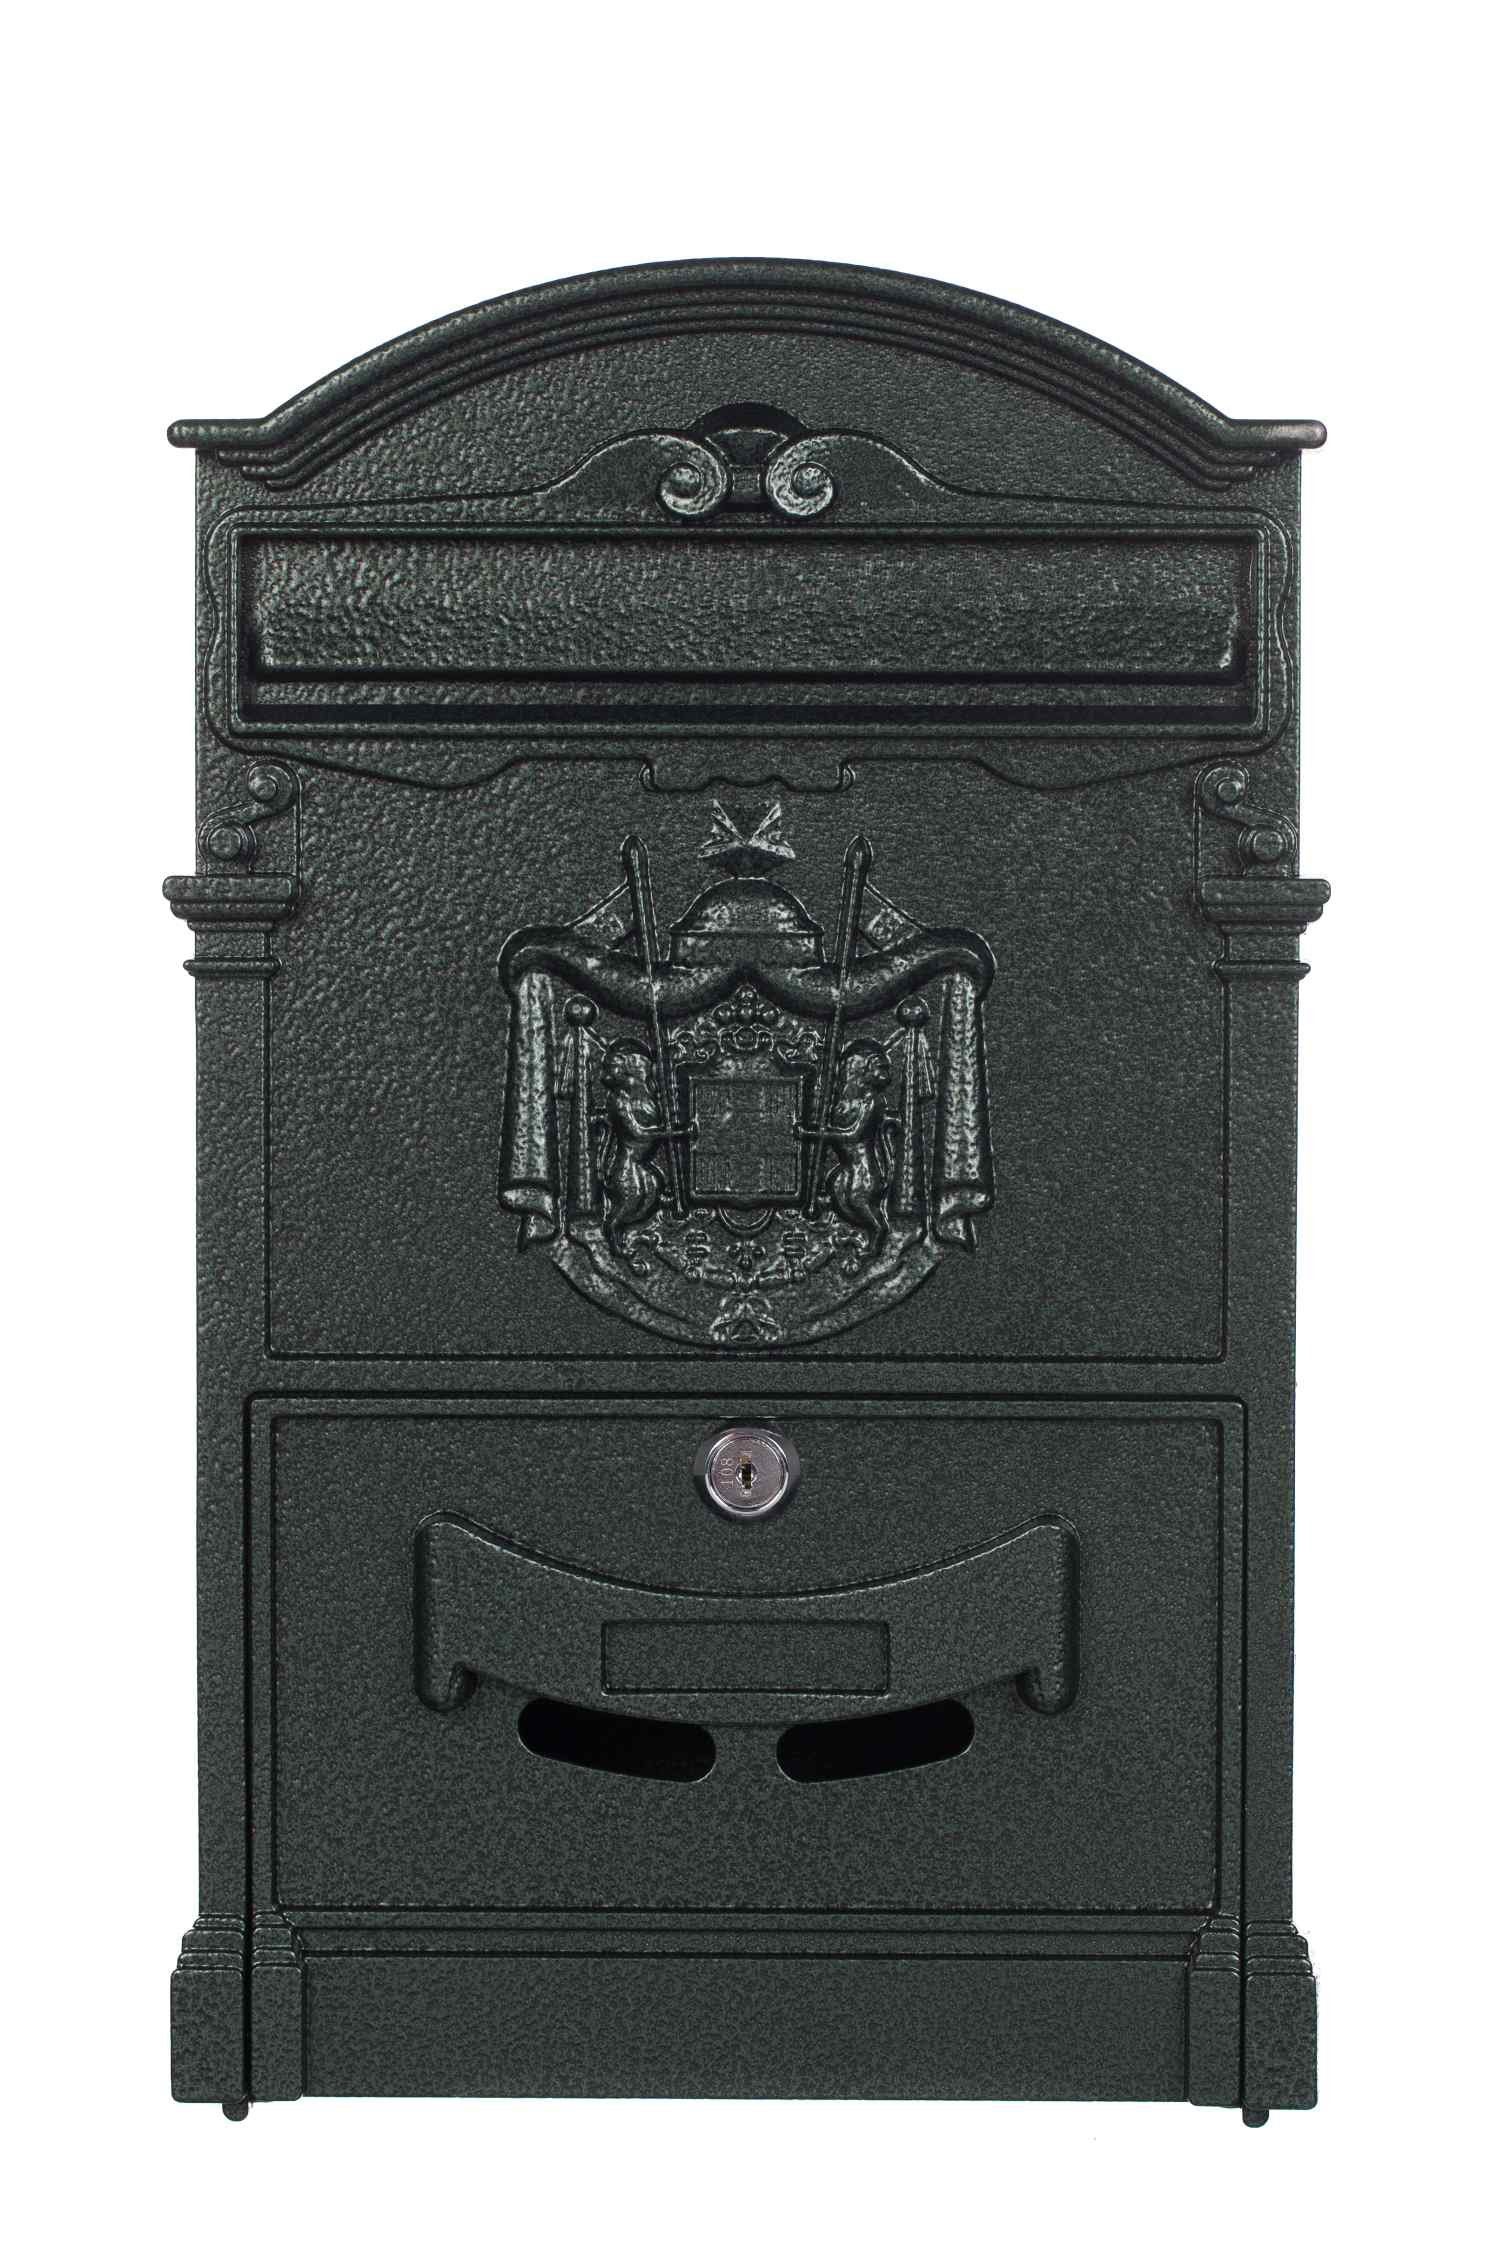 BIRENDY Briefkasten Antiker großer Briefkasten LB-001 Nostalgisch Grün edel Wandbriefkasten